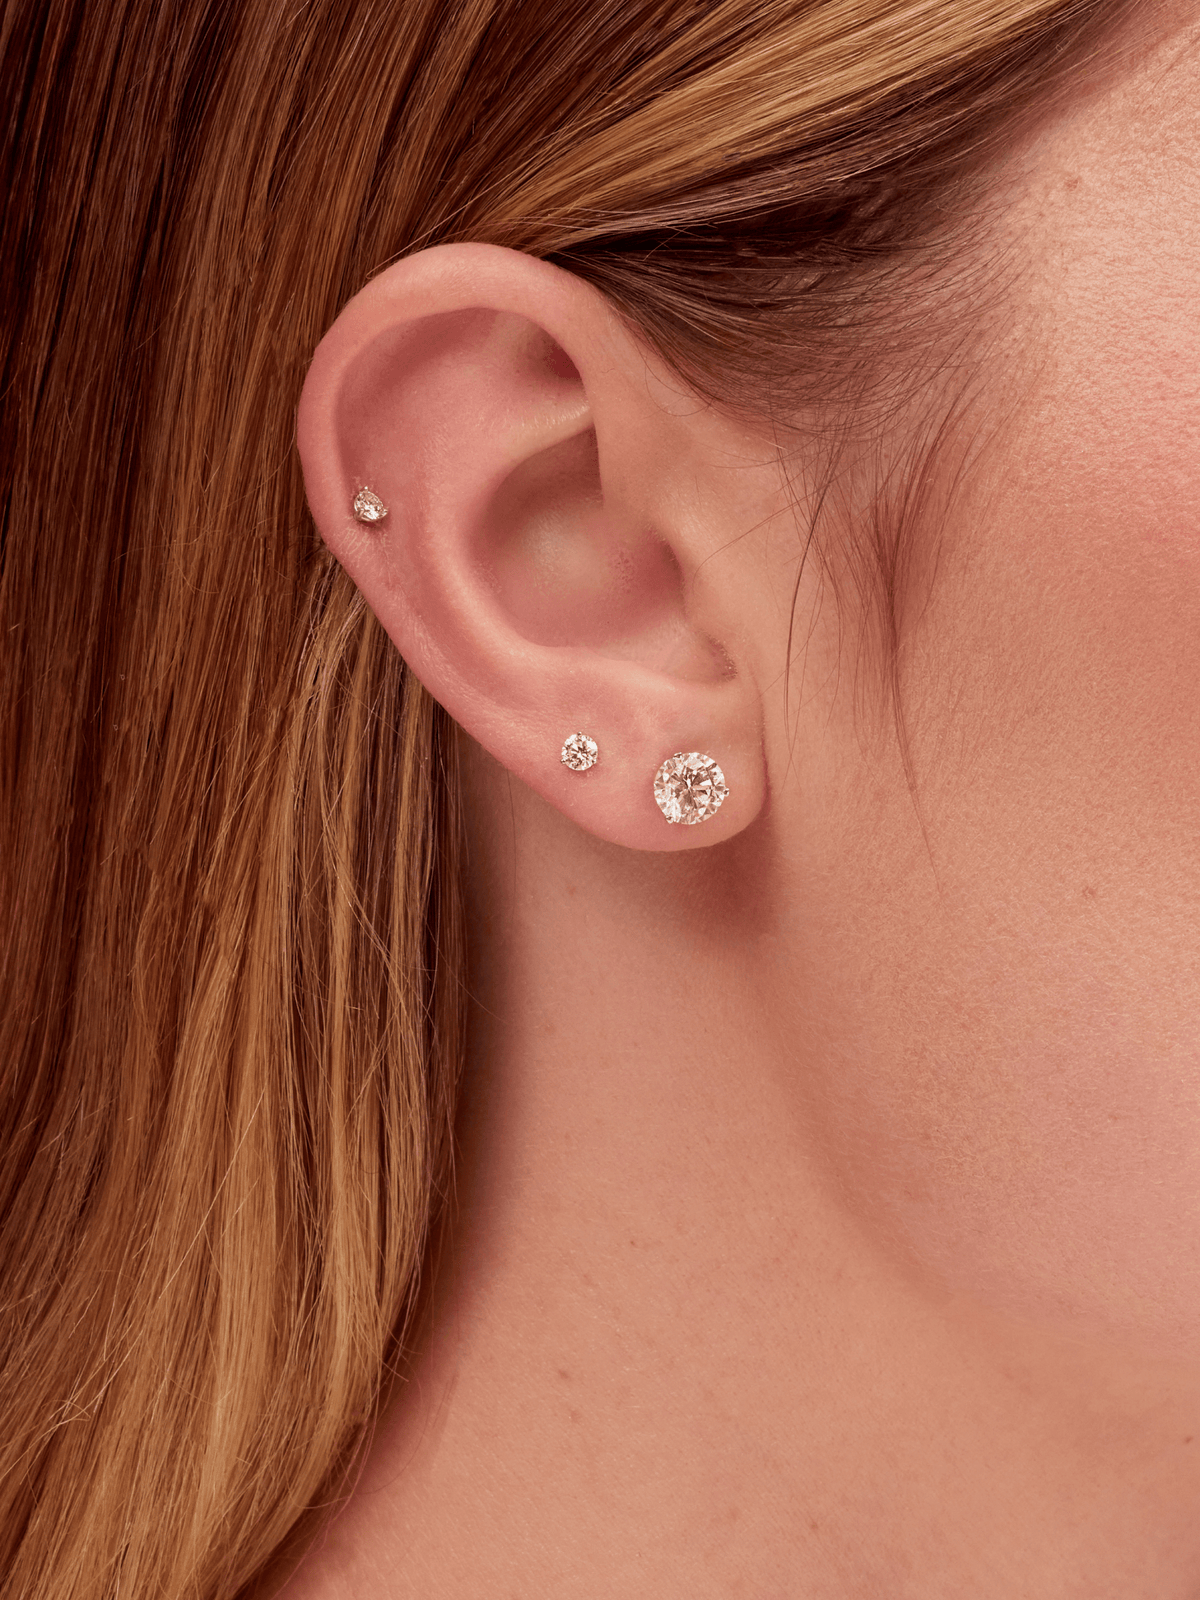 Three diamond stud earrings on model ear